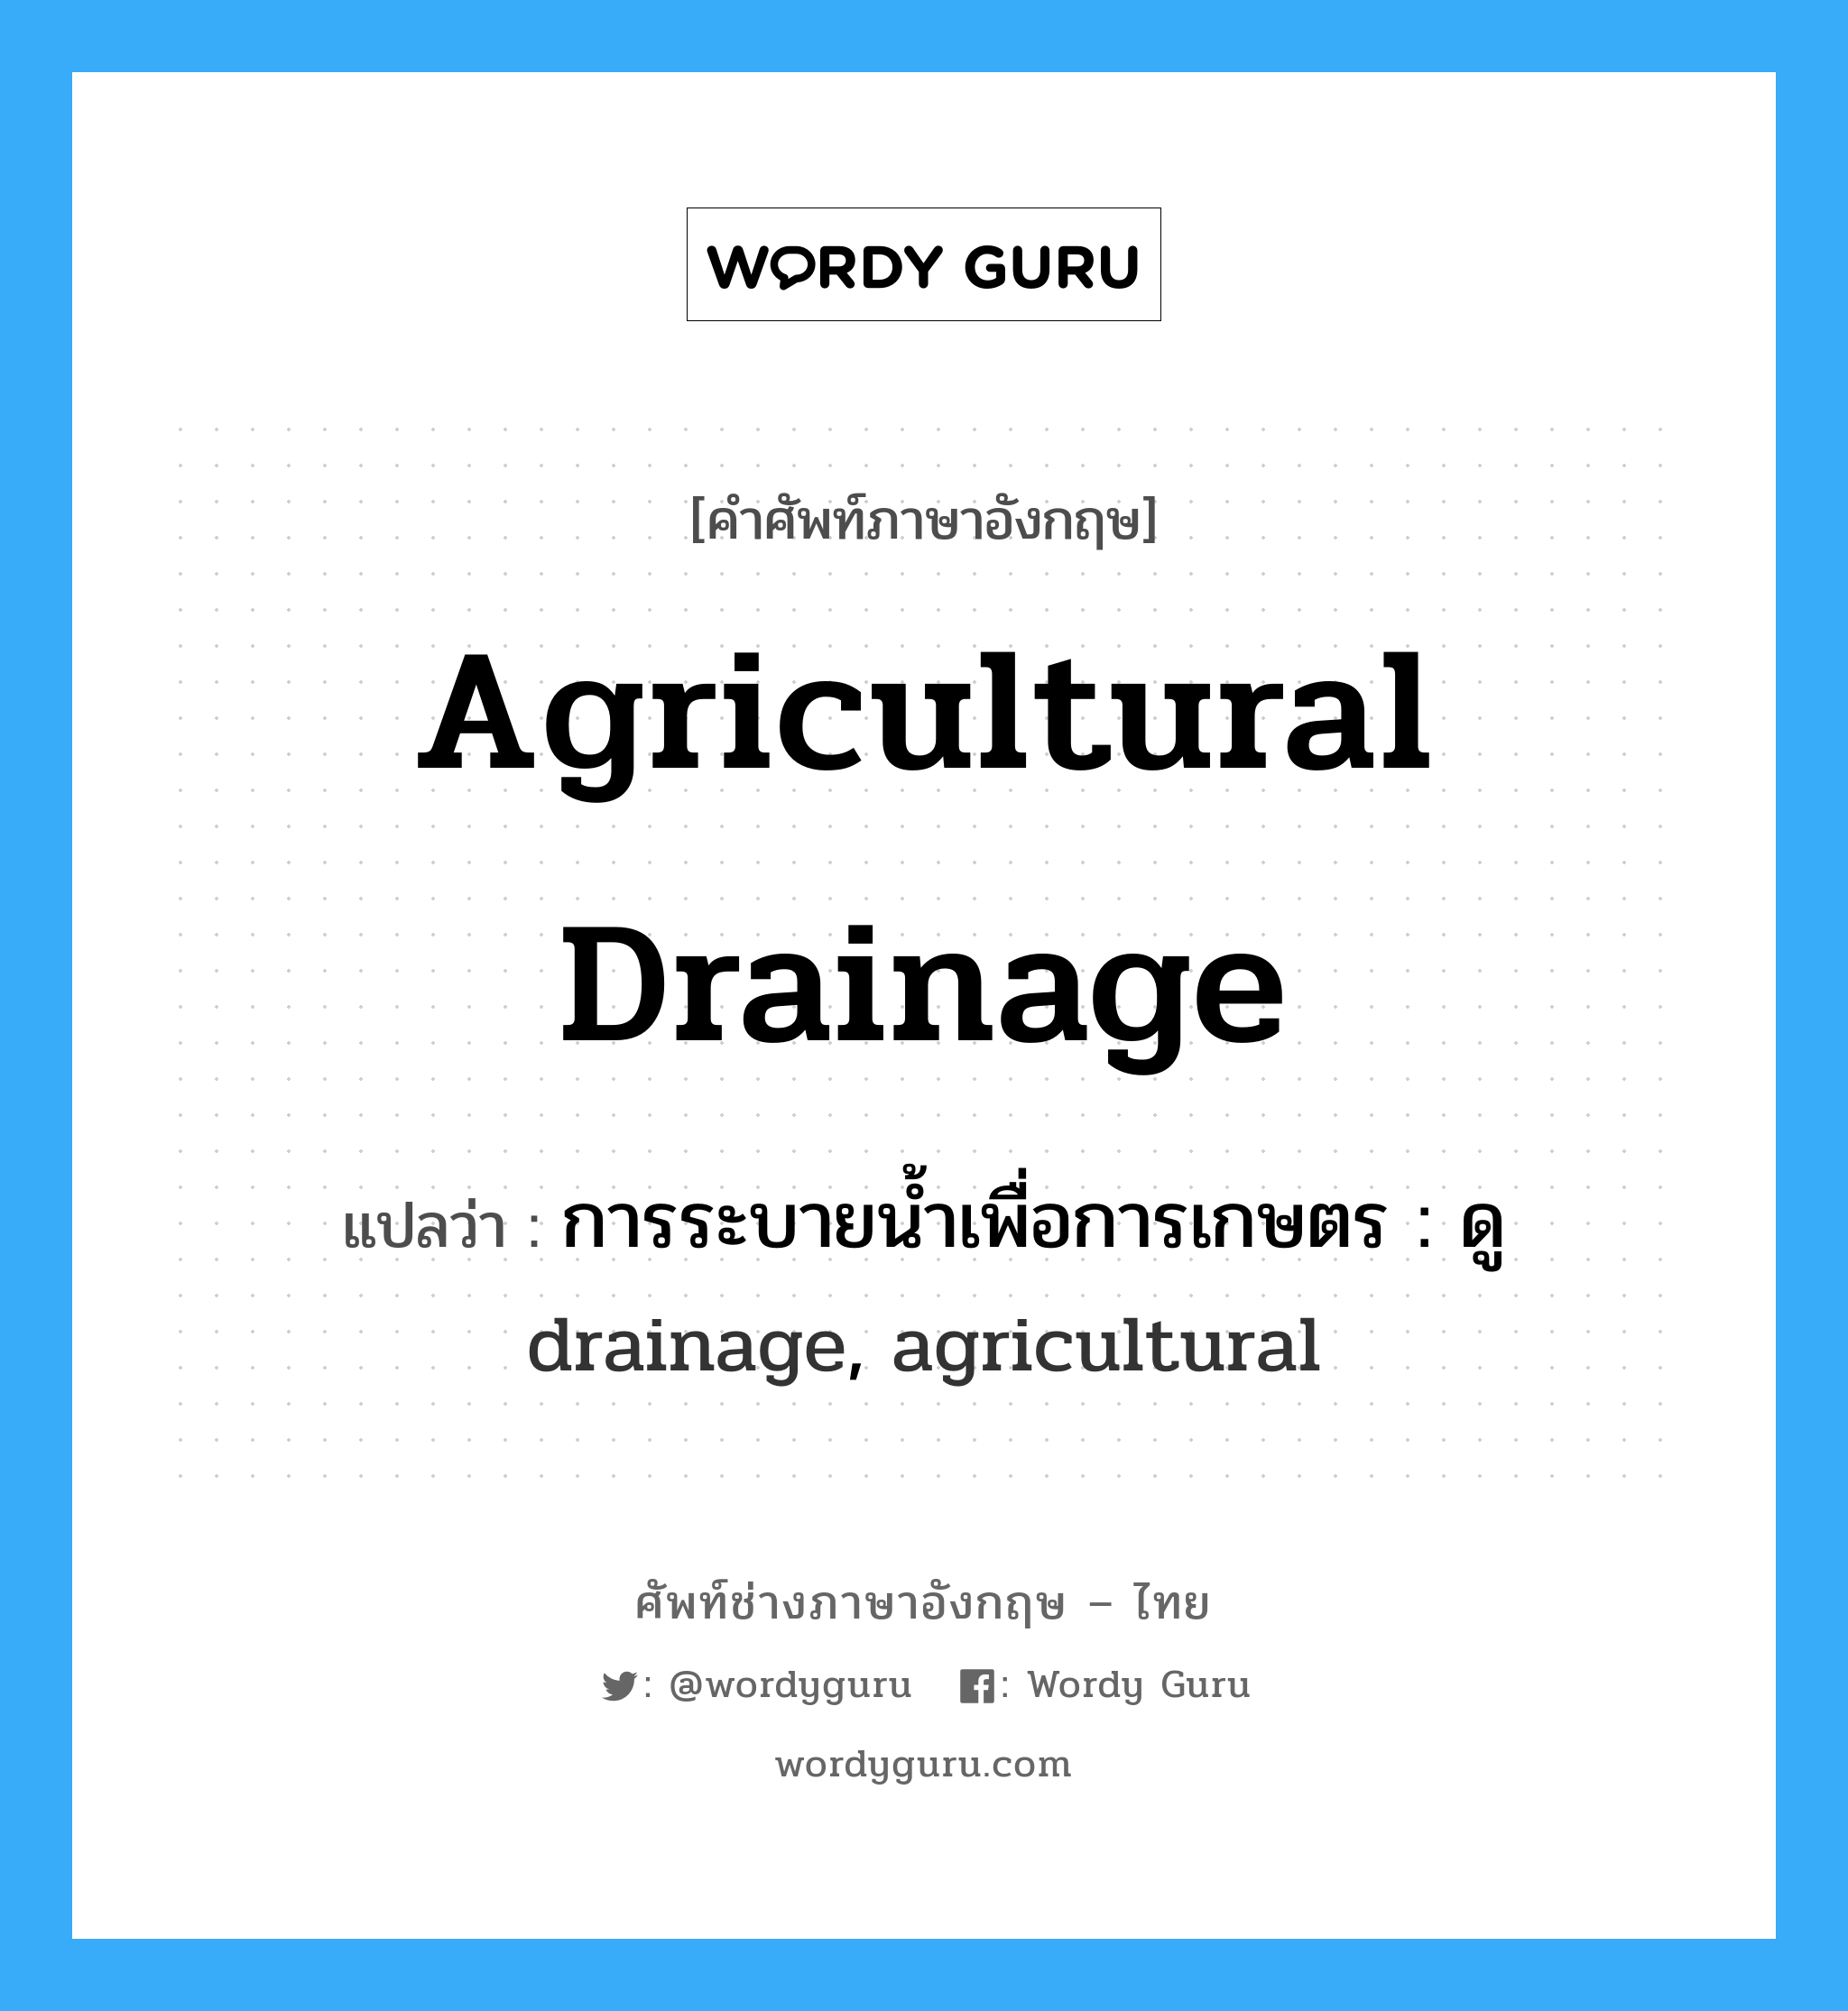 การระบายน้ำเพื่อการเกษตร : ดู drainage, agricultural ภาษาอังกฤษ?, คำศัพท์ช่างภาษาอังกฤษ - ไทย การระบายน้ำเพื่อการเกษตร : ดู drainage, agricultural คำศัพท์ภาษาอังกฤษ การระบายน้ำเพื่อการเกษตร : ดู drainage, agricultural แปลว่า agricultural drainage